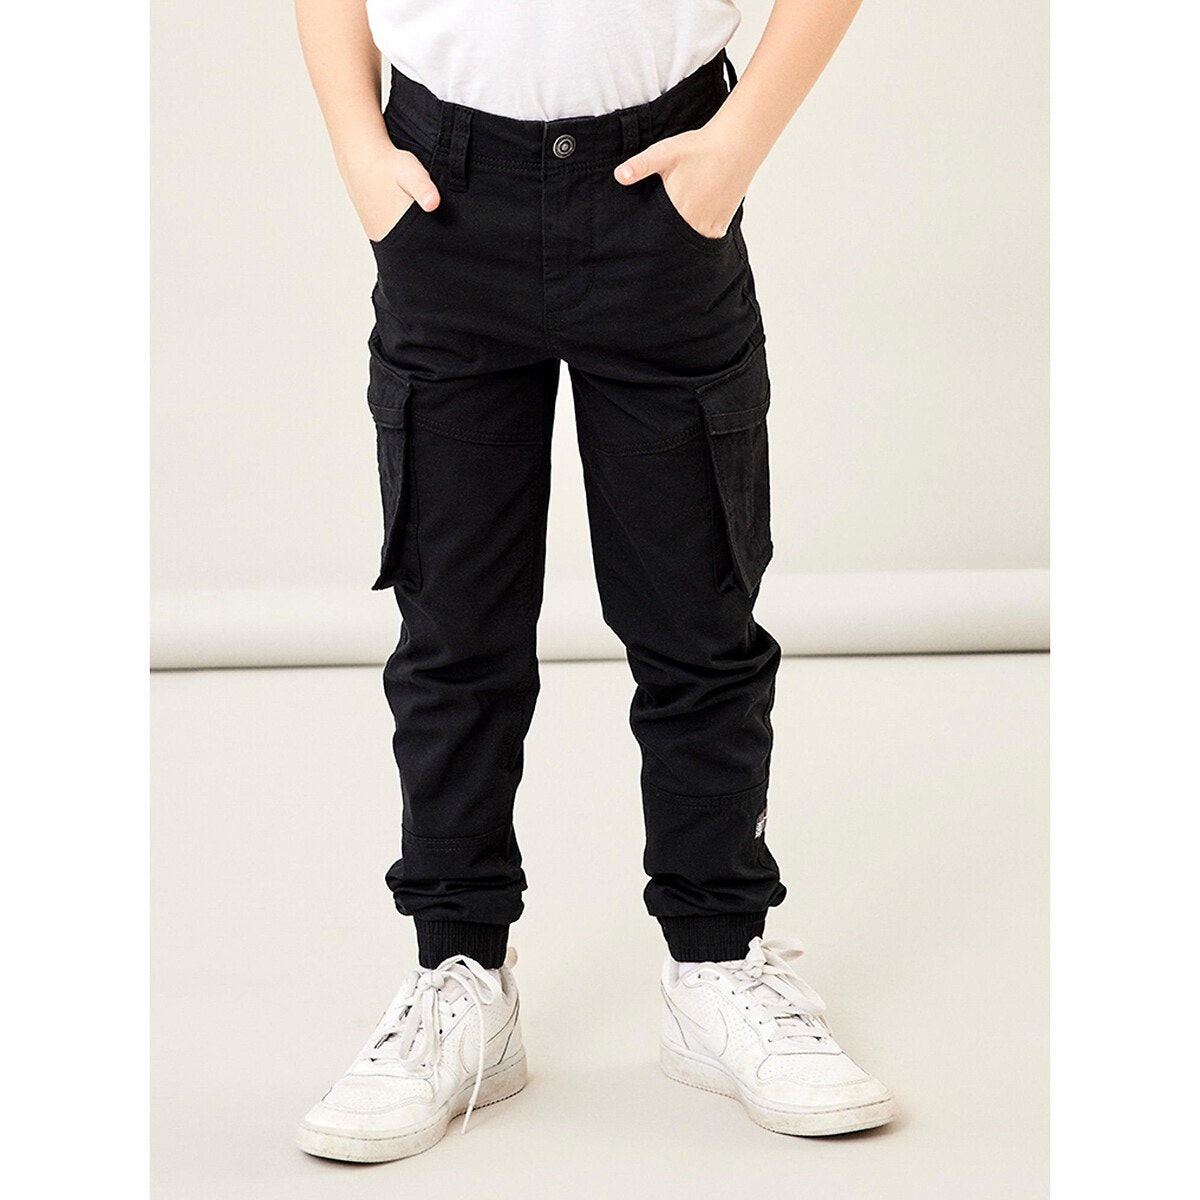 Παντελόνι με μεγάλες τσέπες, 6-14 ετών